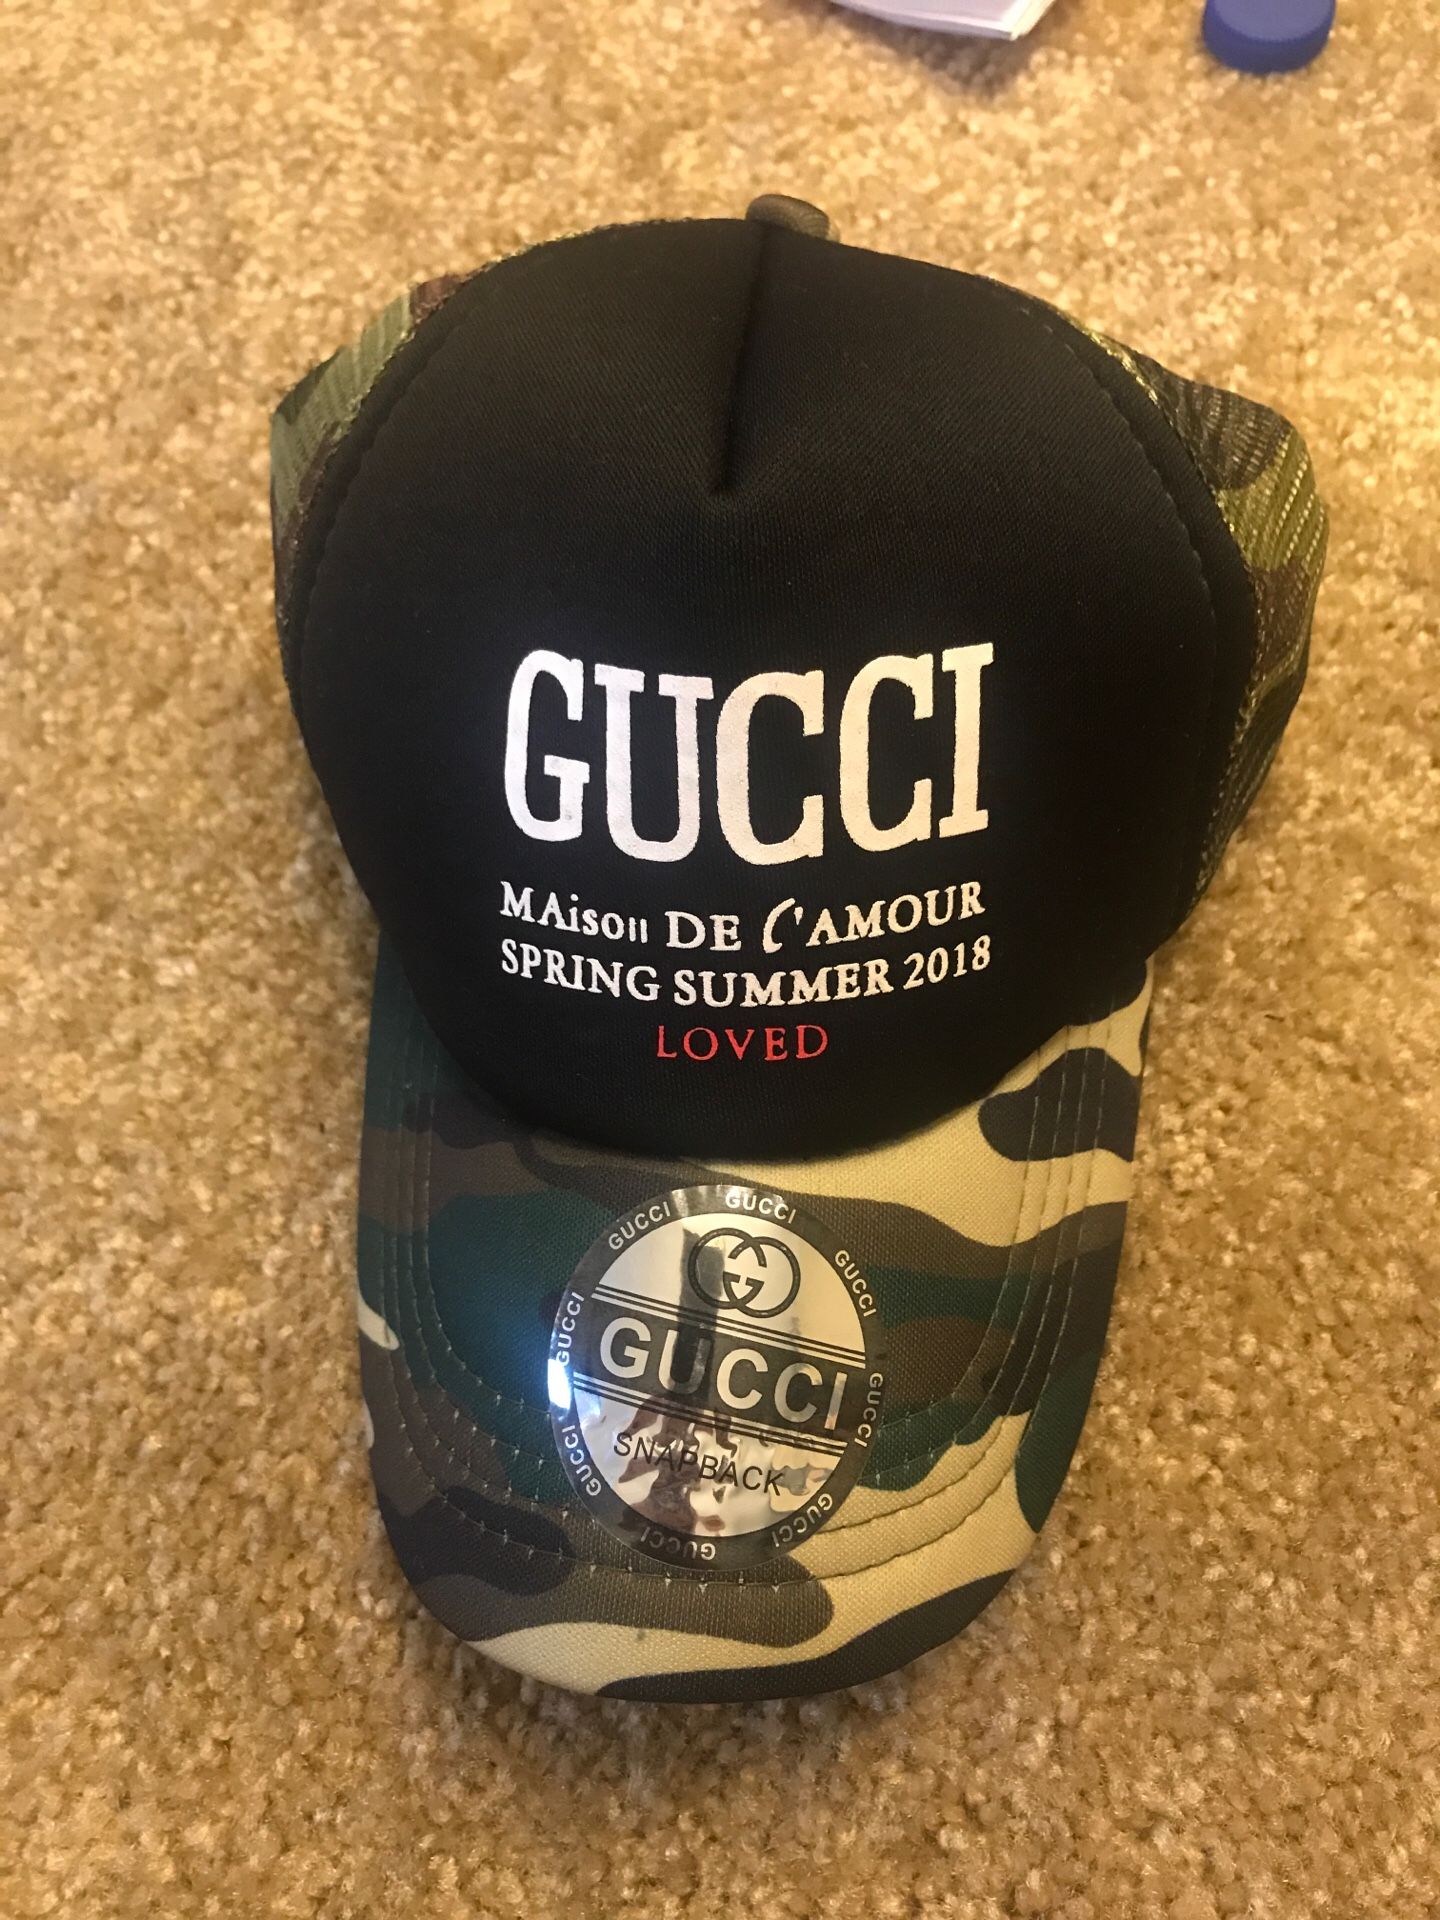 New Gucci hat